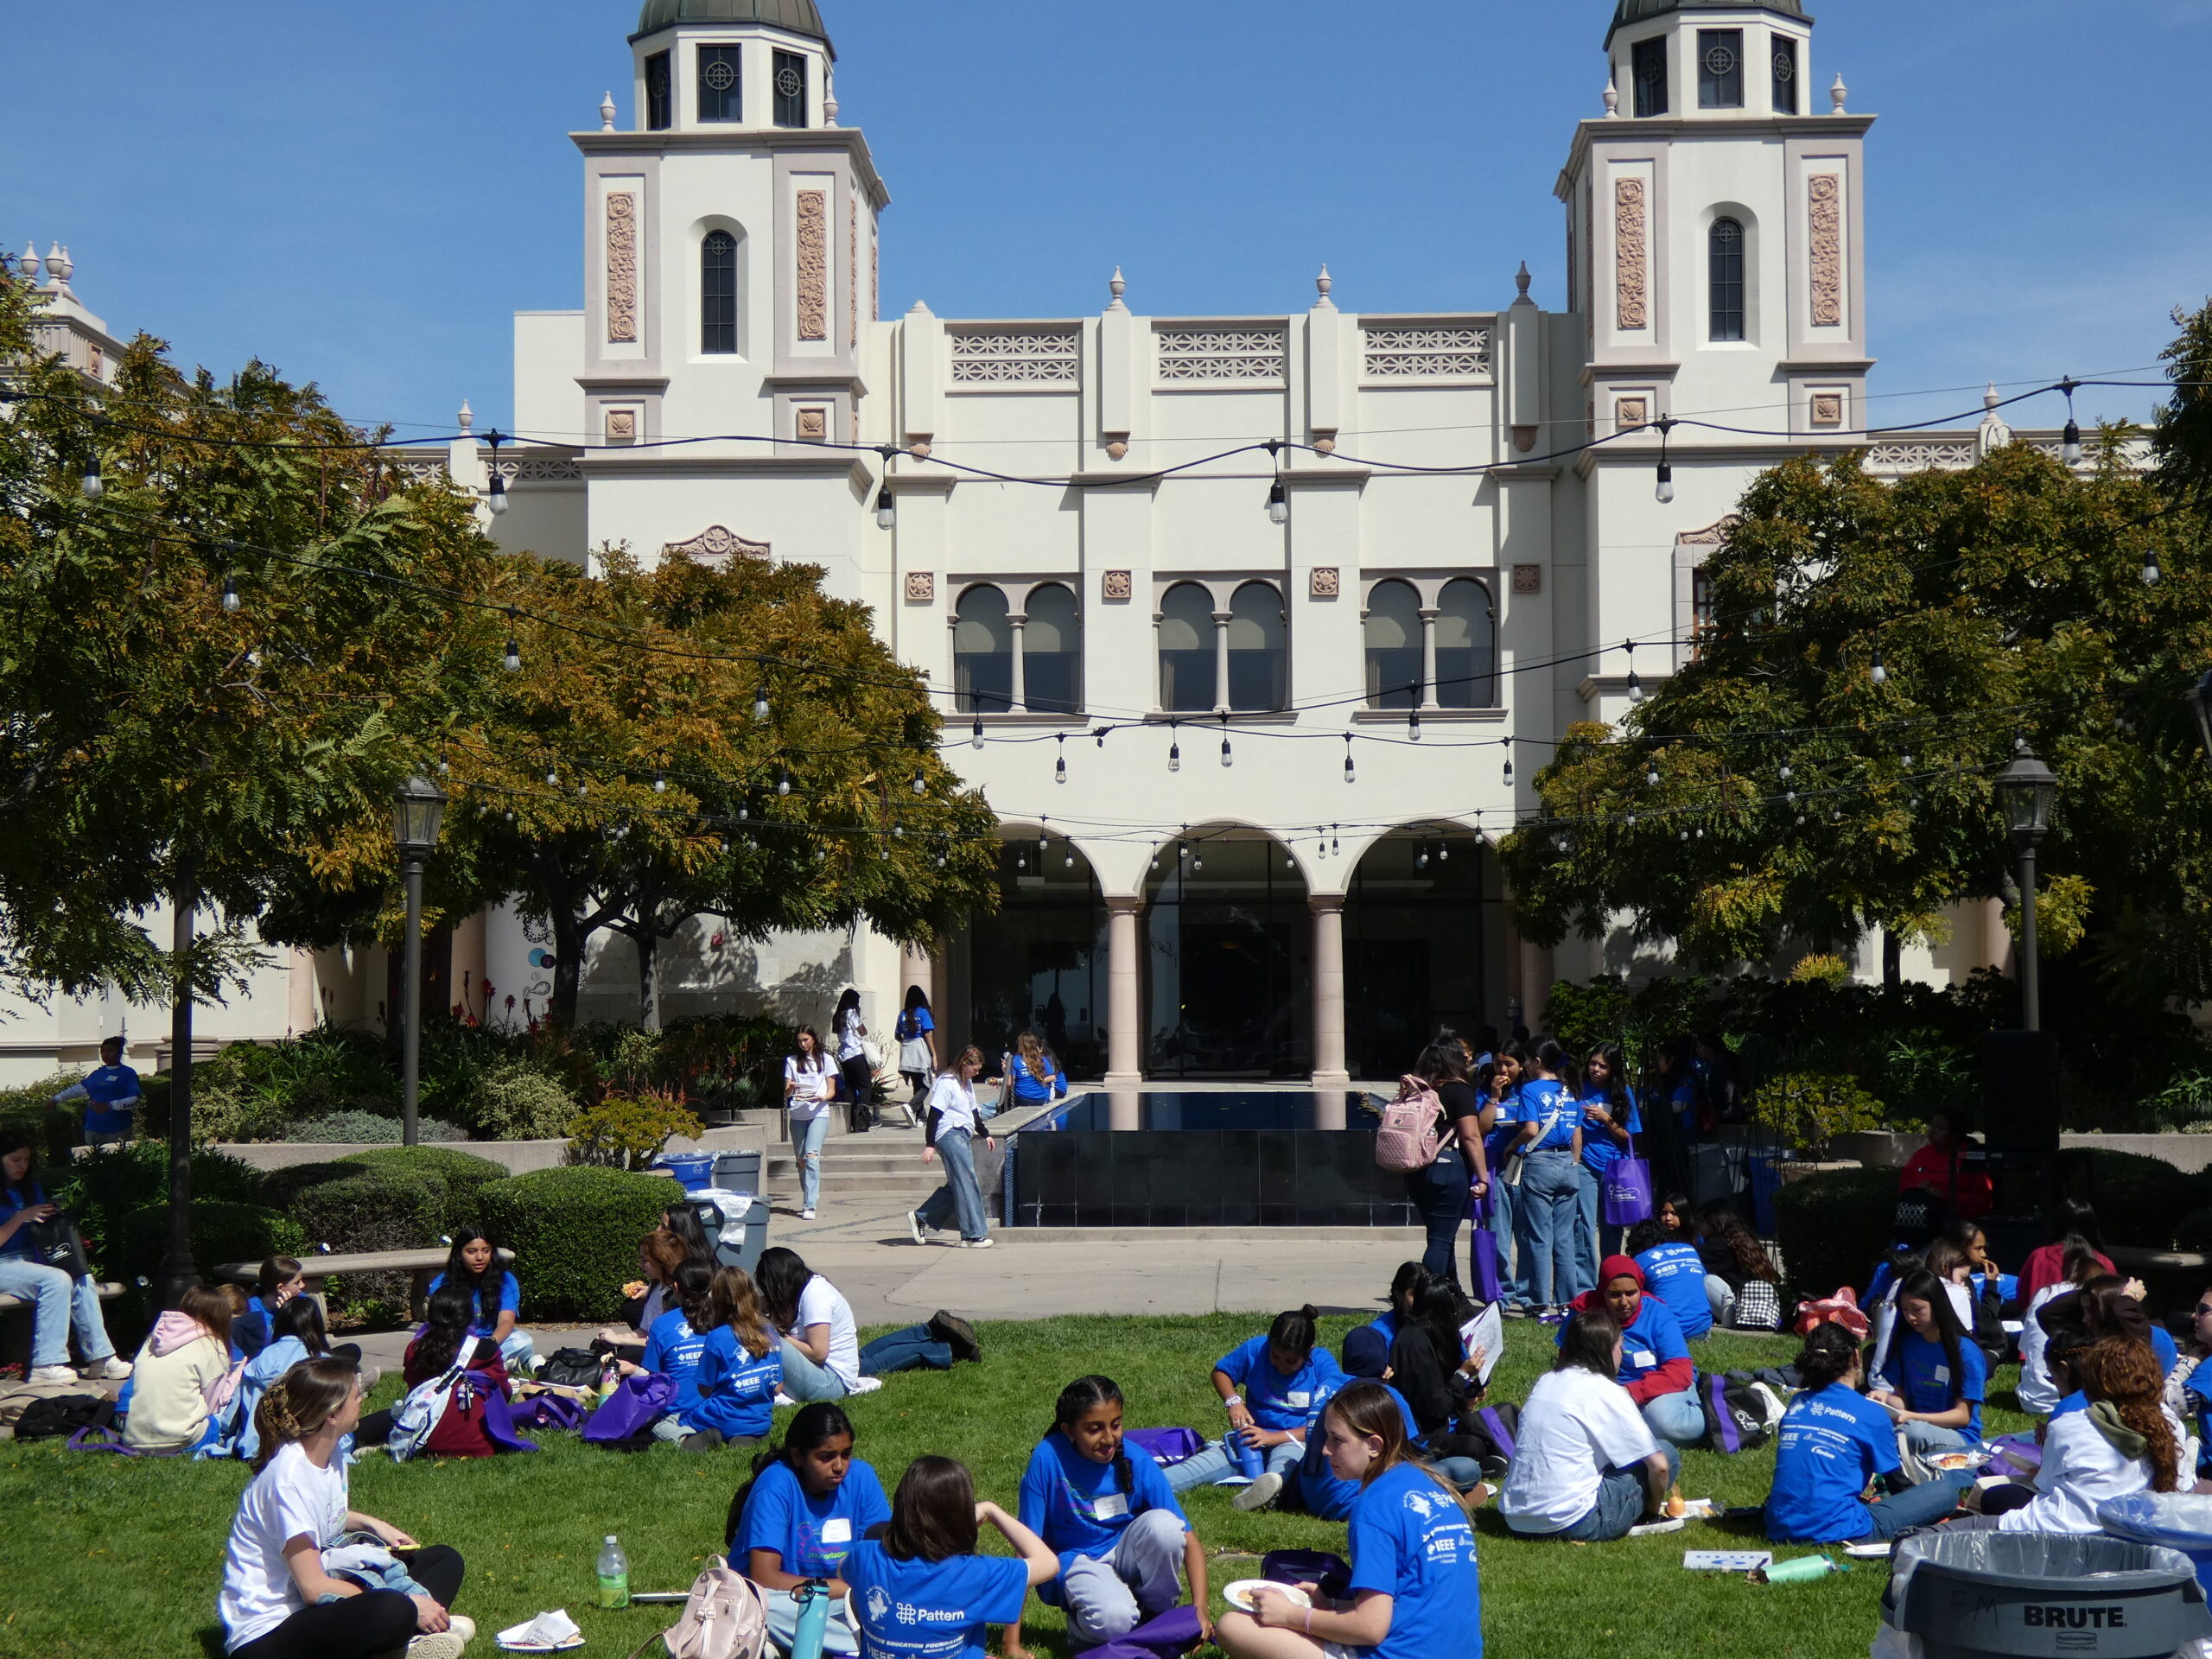 Un campus où de nombreux étudiants traînent sur le terrain avec des T-shirts assortis.